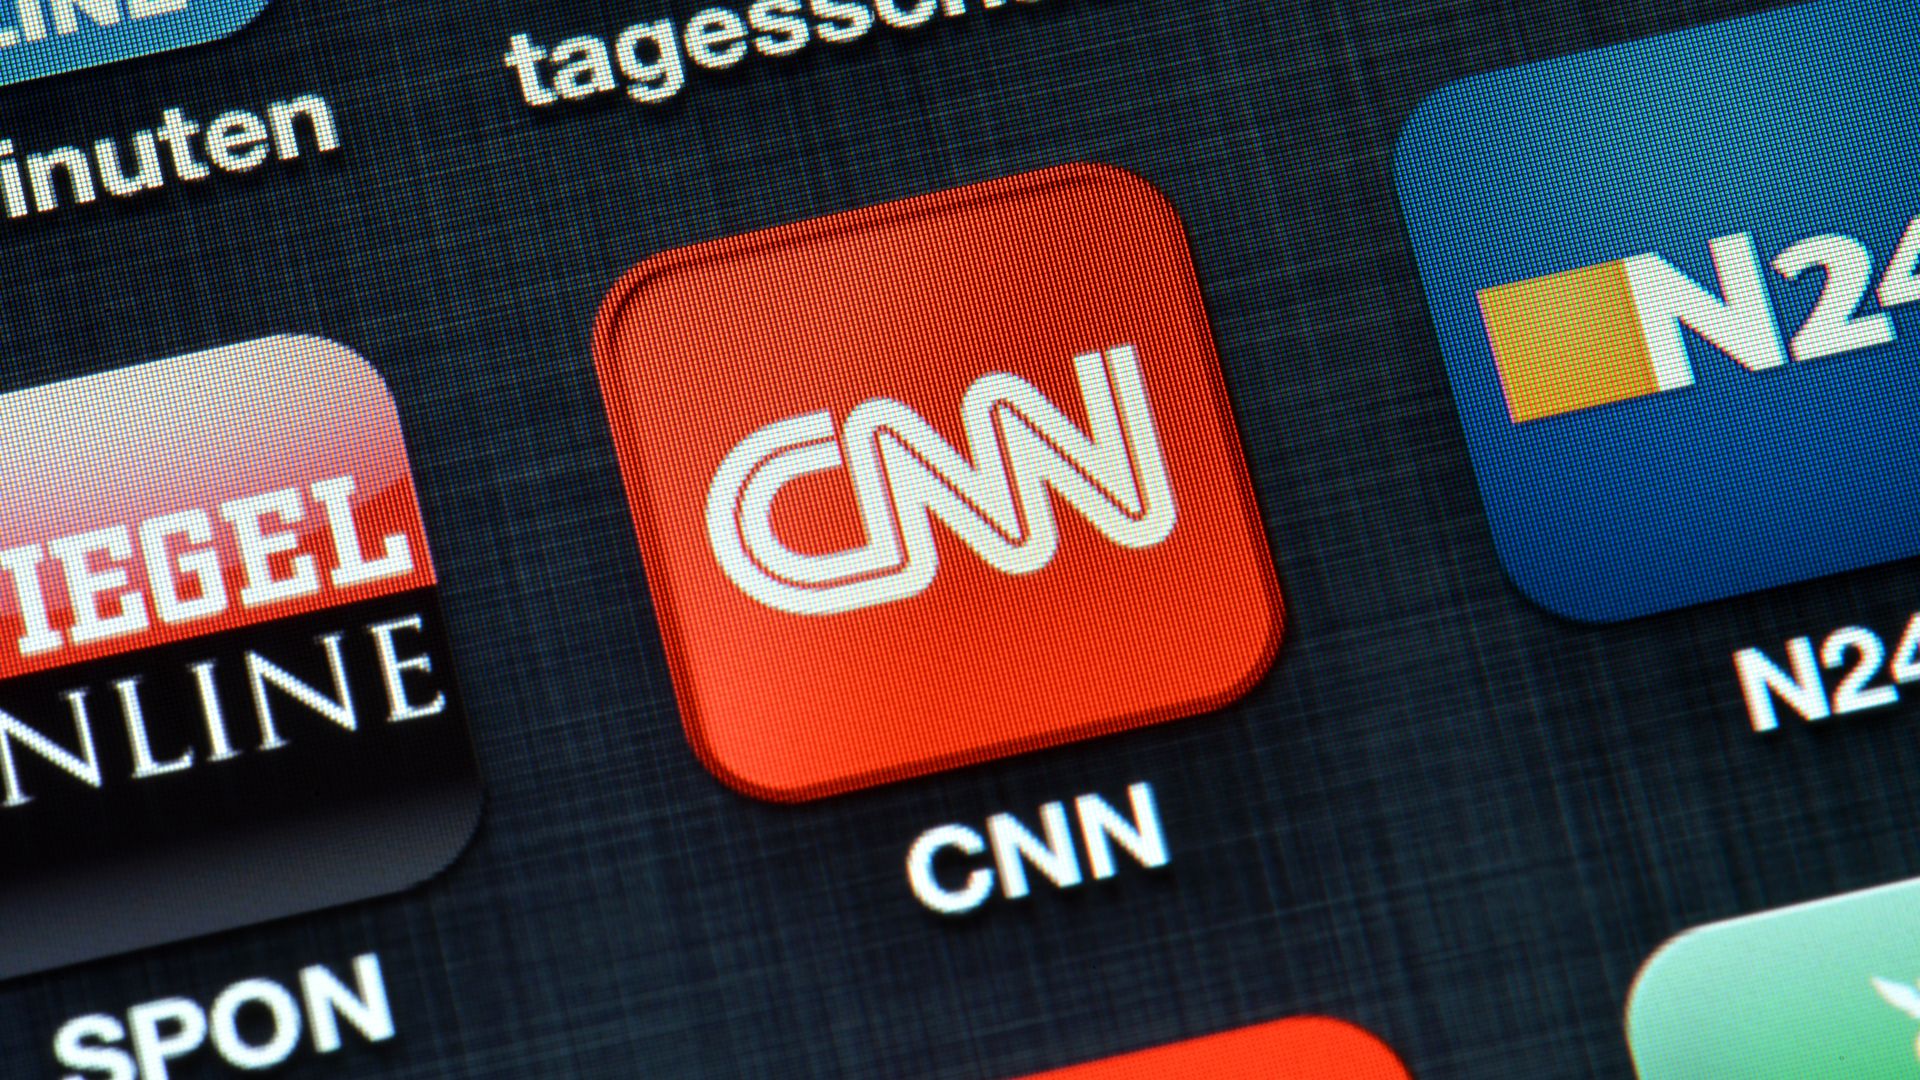 The CNN logo on a phone